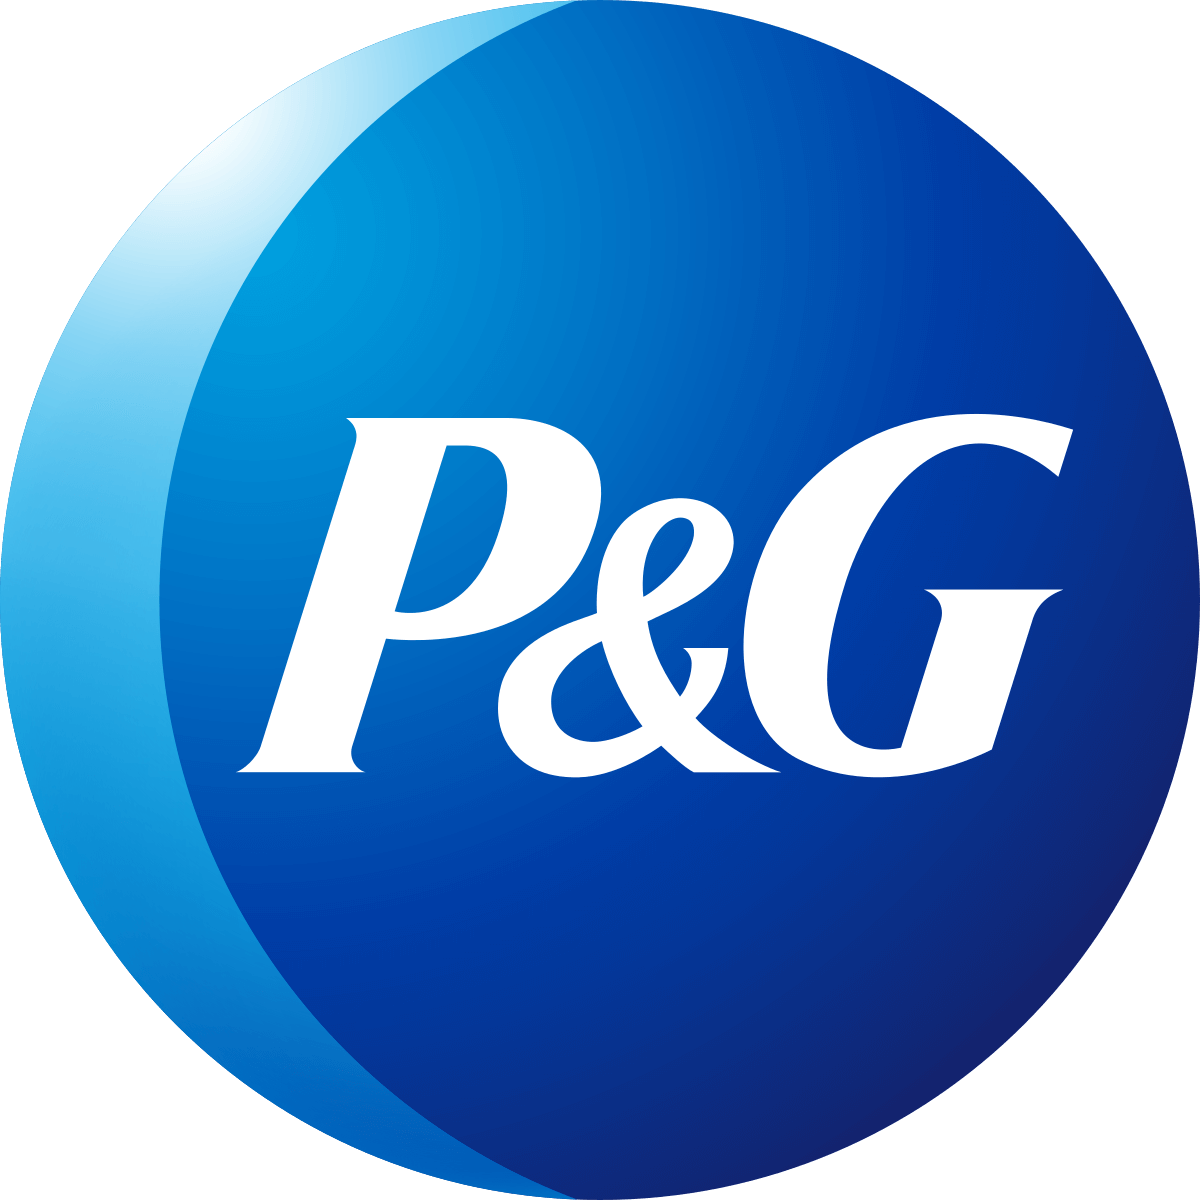 Proctor & Gamble monogram logo 